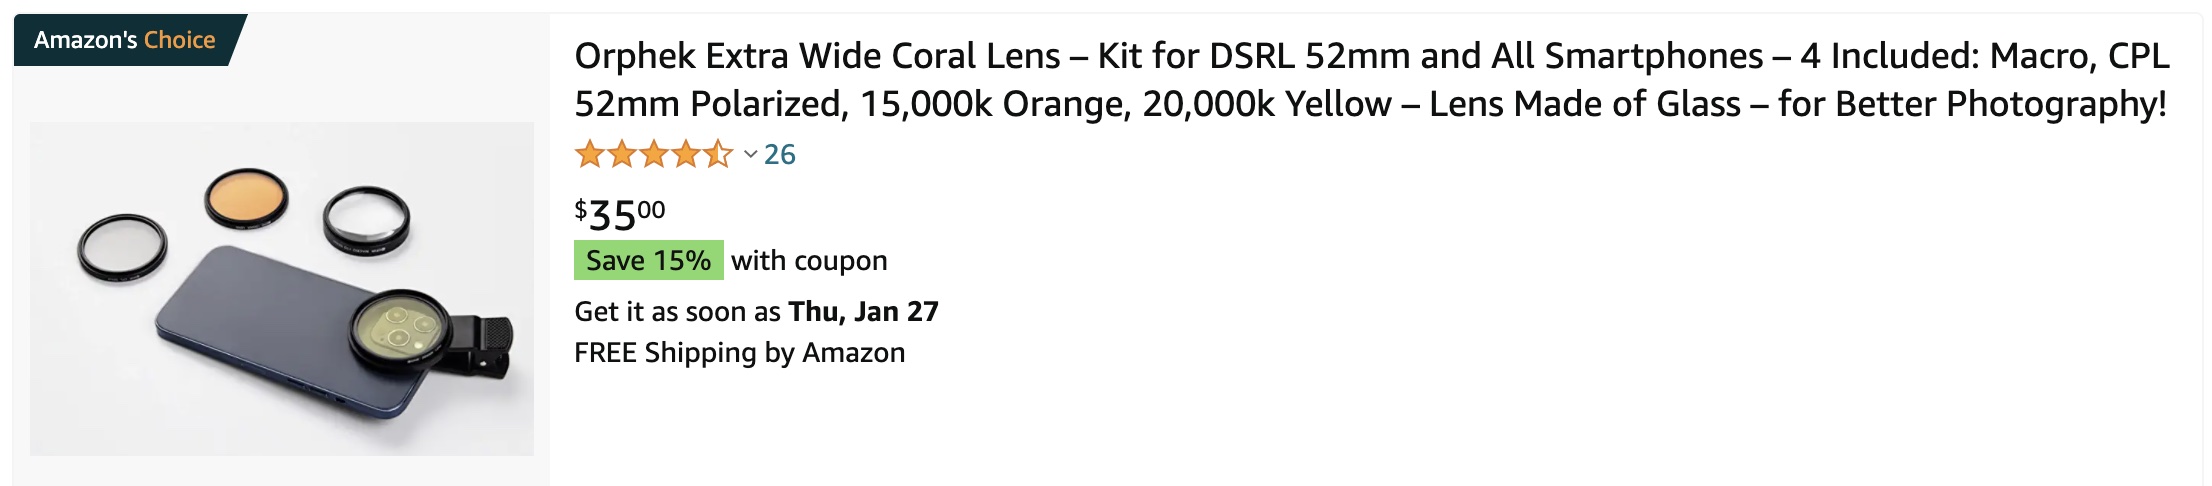 køb på amazon Orphek Extra Wide Coral Lens